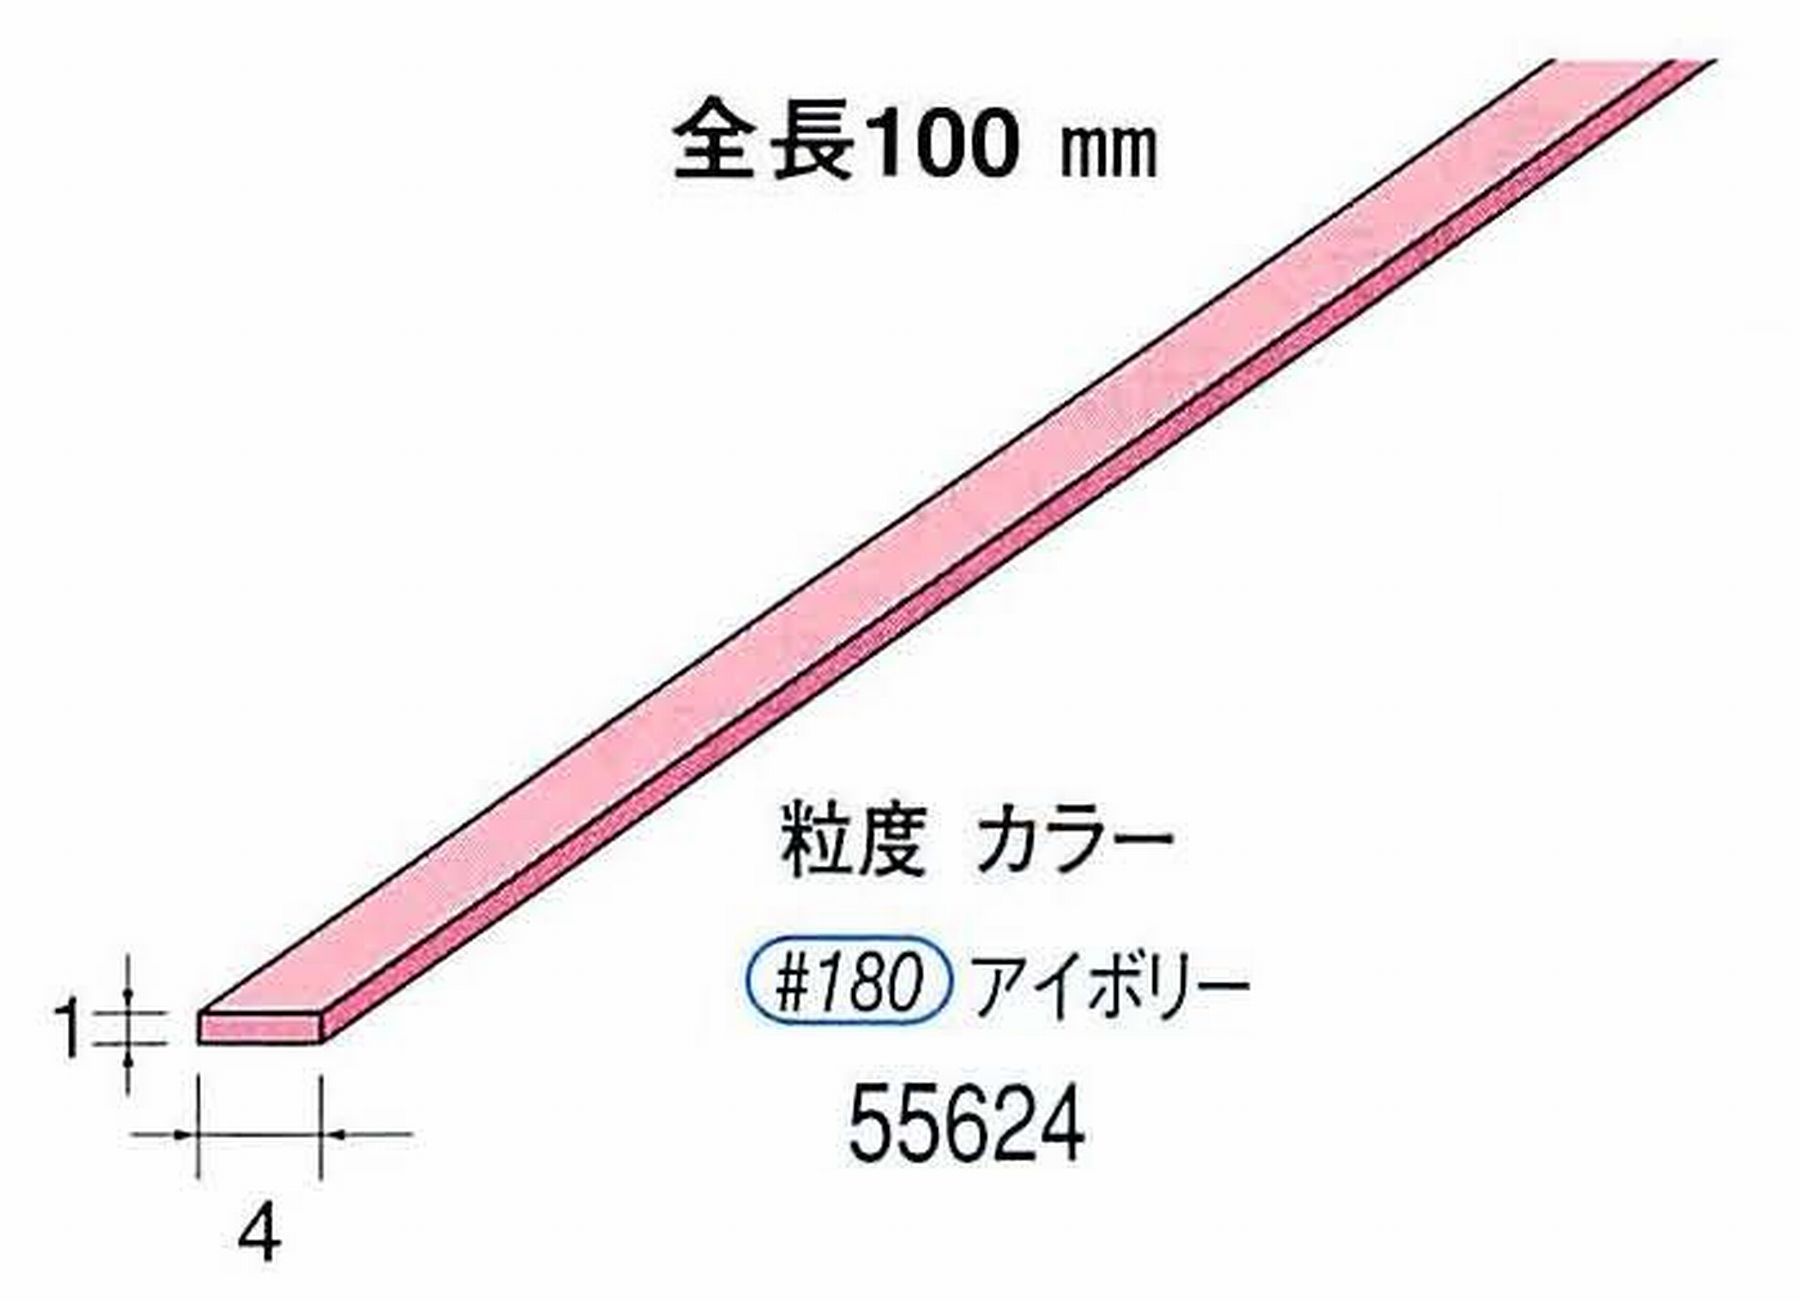 ナカニシ/NAKANISHI セラファイバー砥石 全長100mm アイボリー 55624